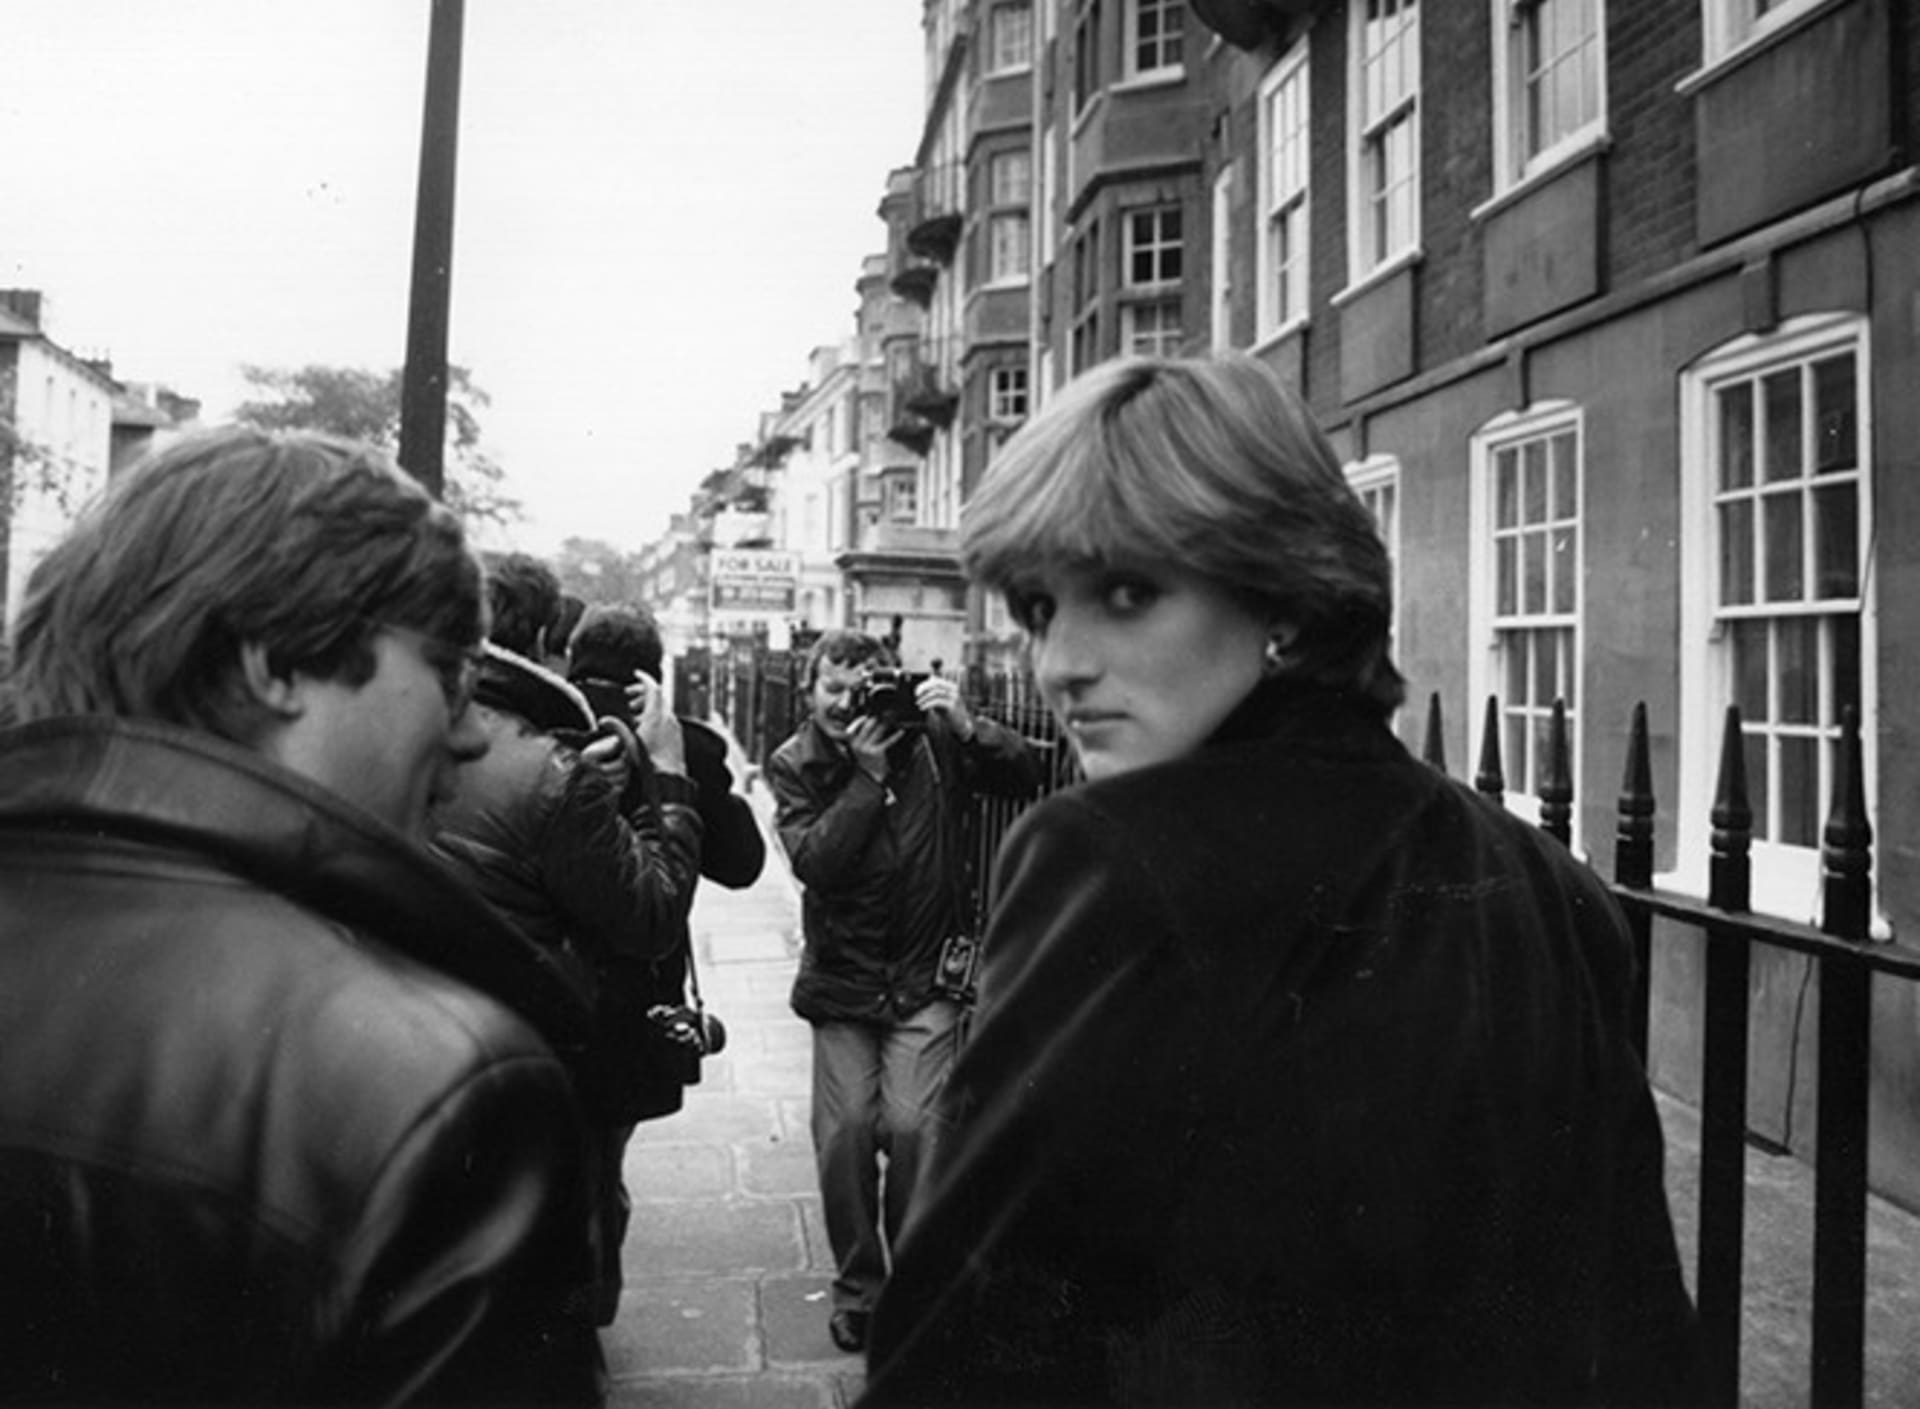 Diana v londýnské ulici obklopena novináři, 1981.